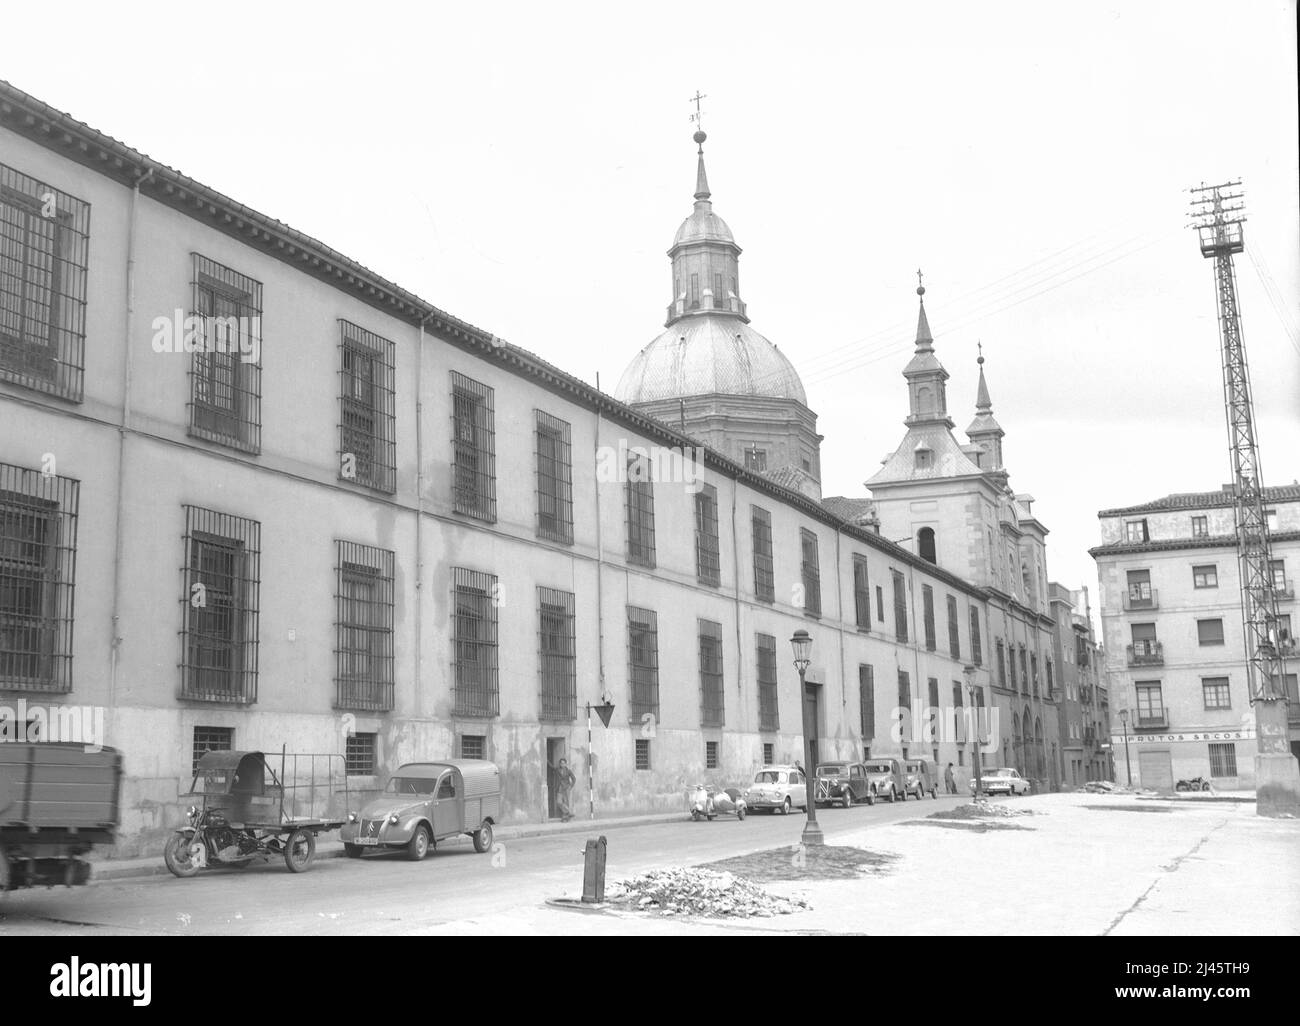 CONVENTO DE LAS COMENDADORAS DE SANTIAGO - SIGLO XVII - FOTOGRAFIA EN  BLANCO Y NEGRO - AÑOS 60. Author: MANUEL DEL OLMO (1631-1685). Location:  CONVENTO DE LAS COMENDADORAS DE SANTIAGO. MADRID. SPAIN Stock Photo - Alamy